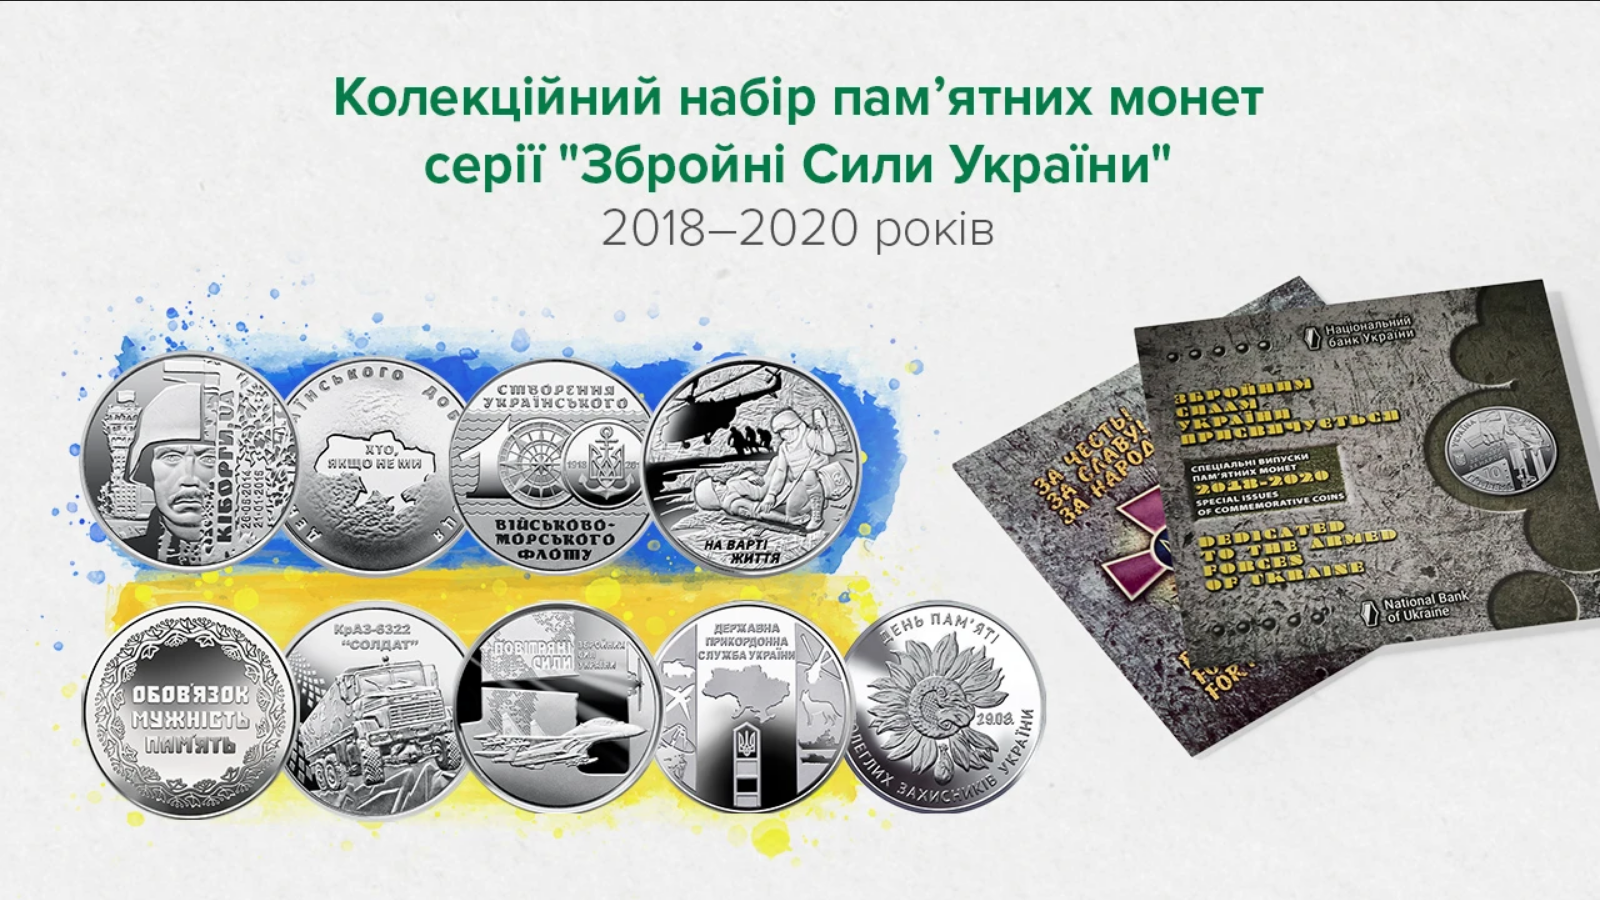 Нацбанк выпустил коллекционный набор монет, посвященный Вооруженным силам Украины